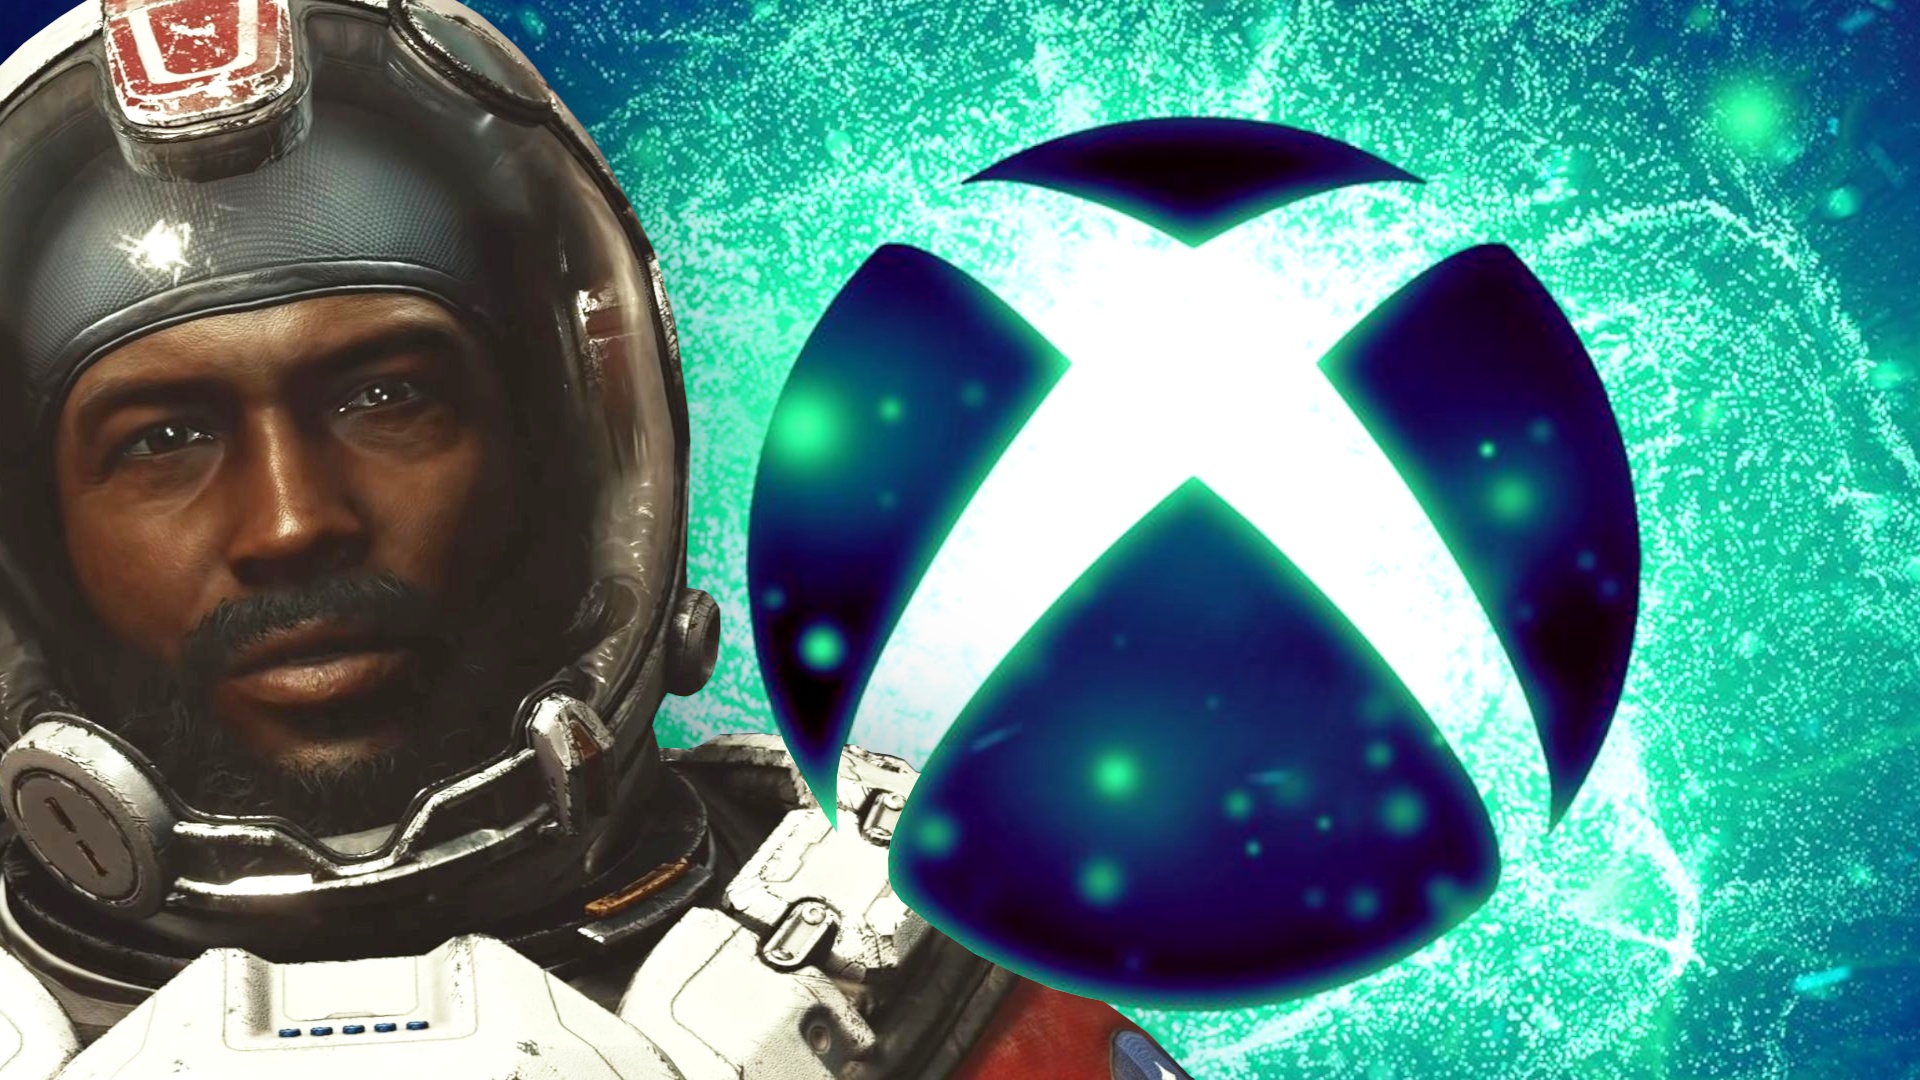 #Die Xbox-Bethesda-Show will einen Fehler vermeiden, der oft bei solchen Events nervt